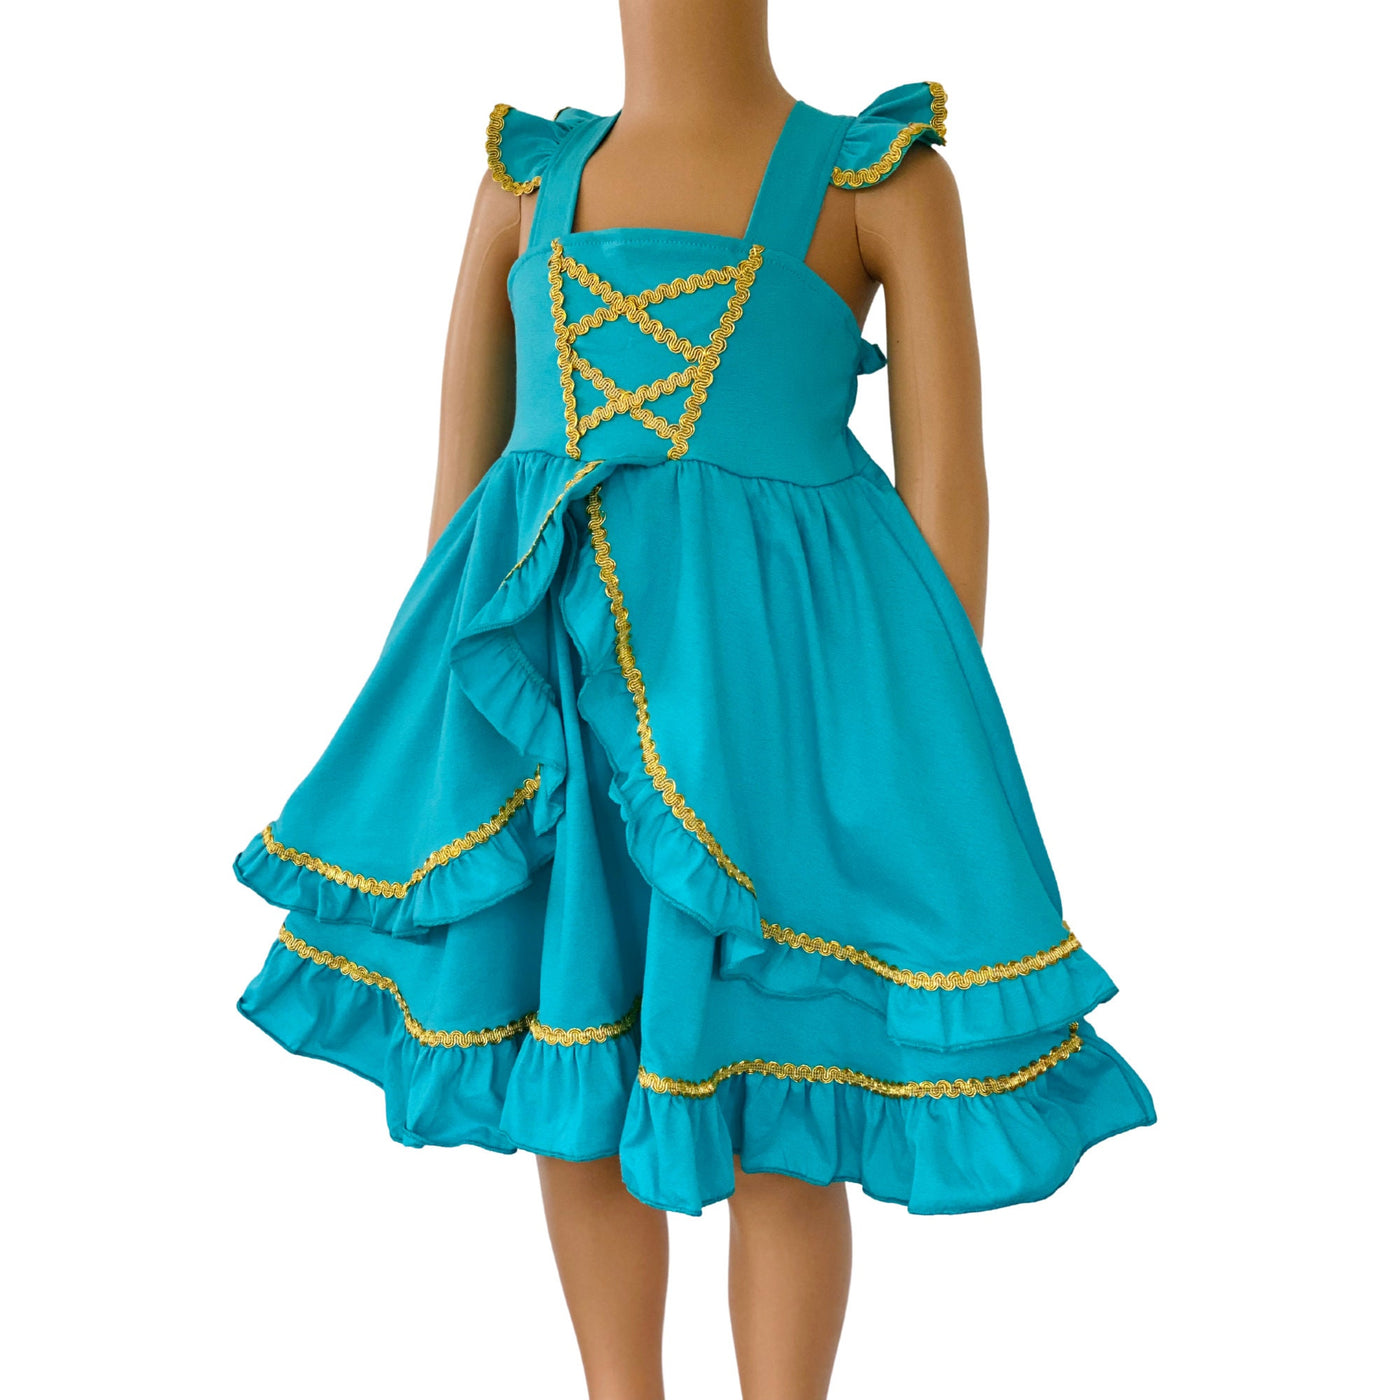 Jasmine princess dress